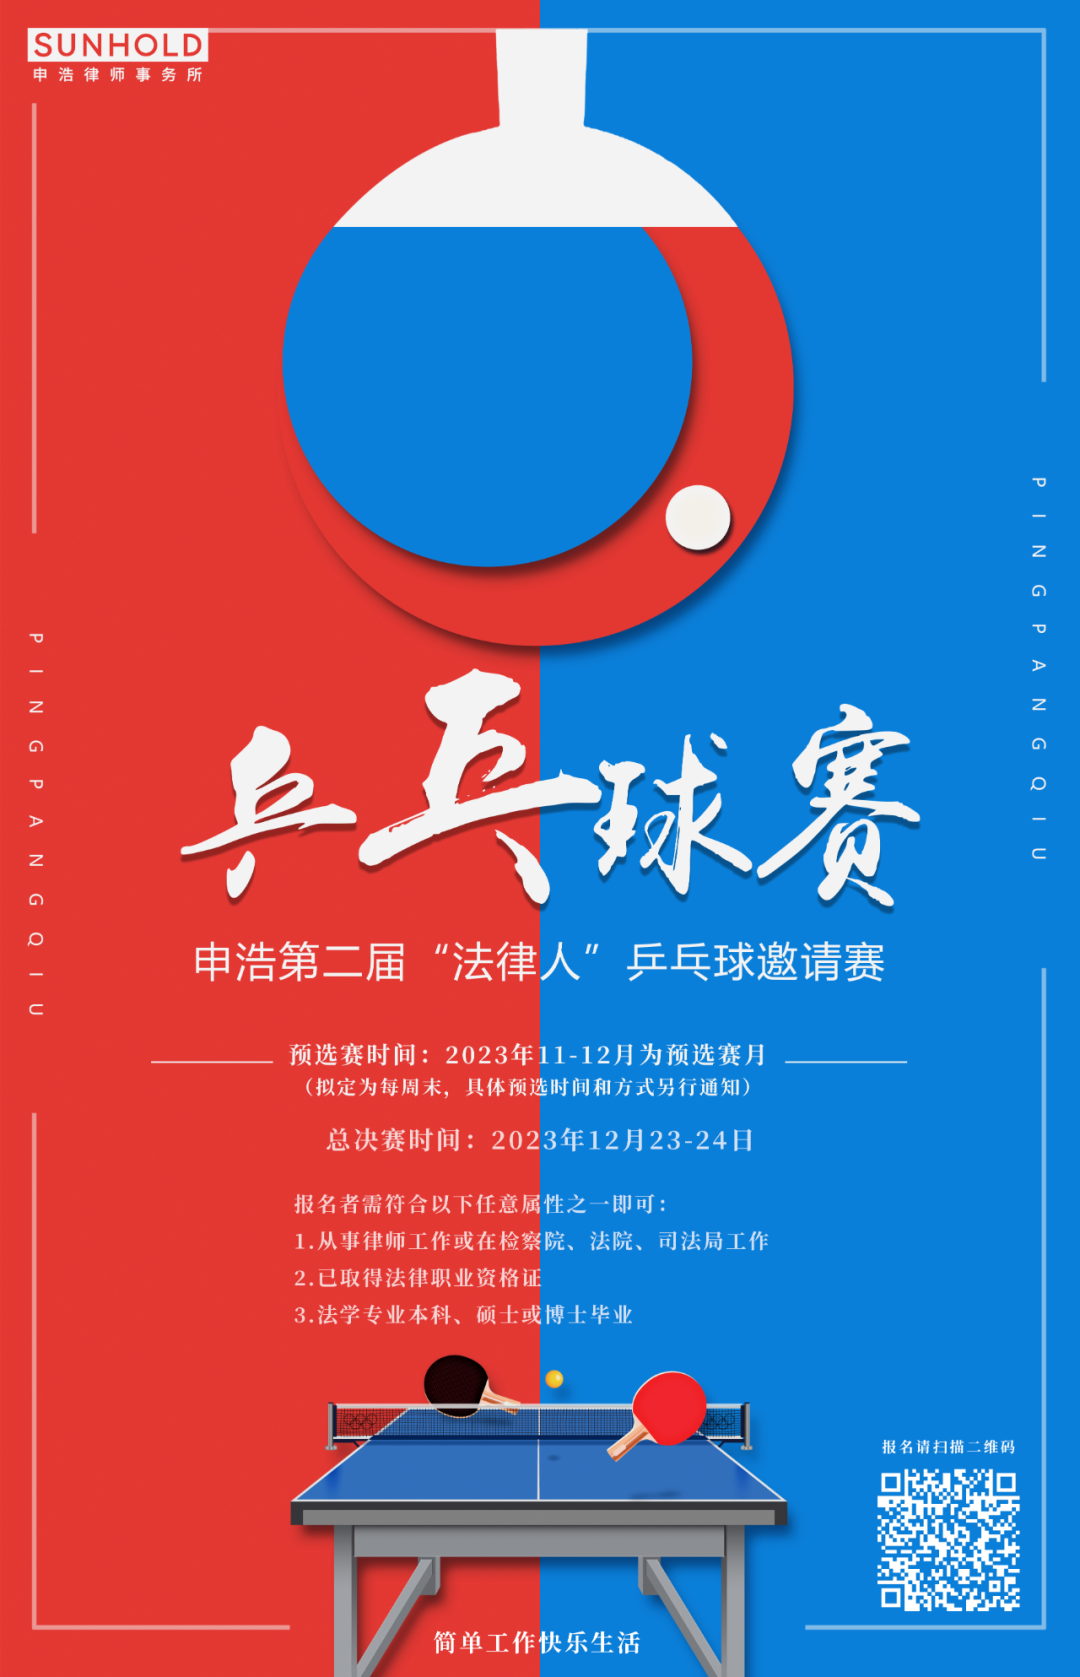 申浩第二届“法律人”乒乓球邀请赛开启报名 | 球不落地 永不放弃